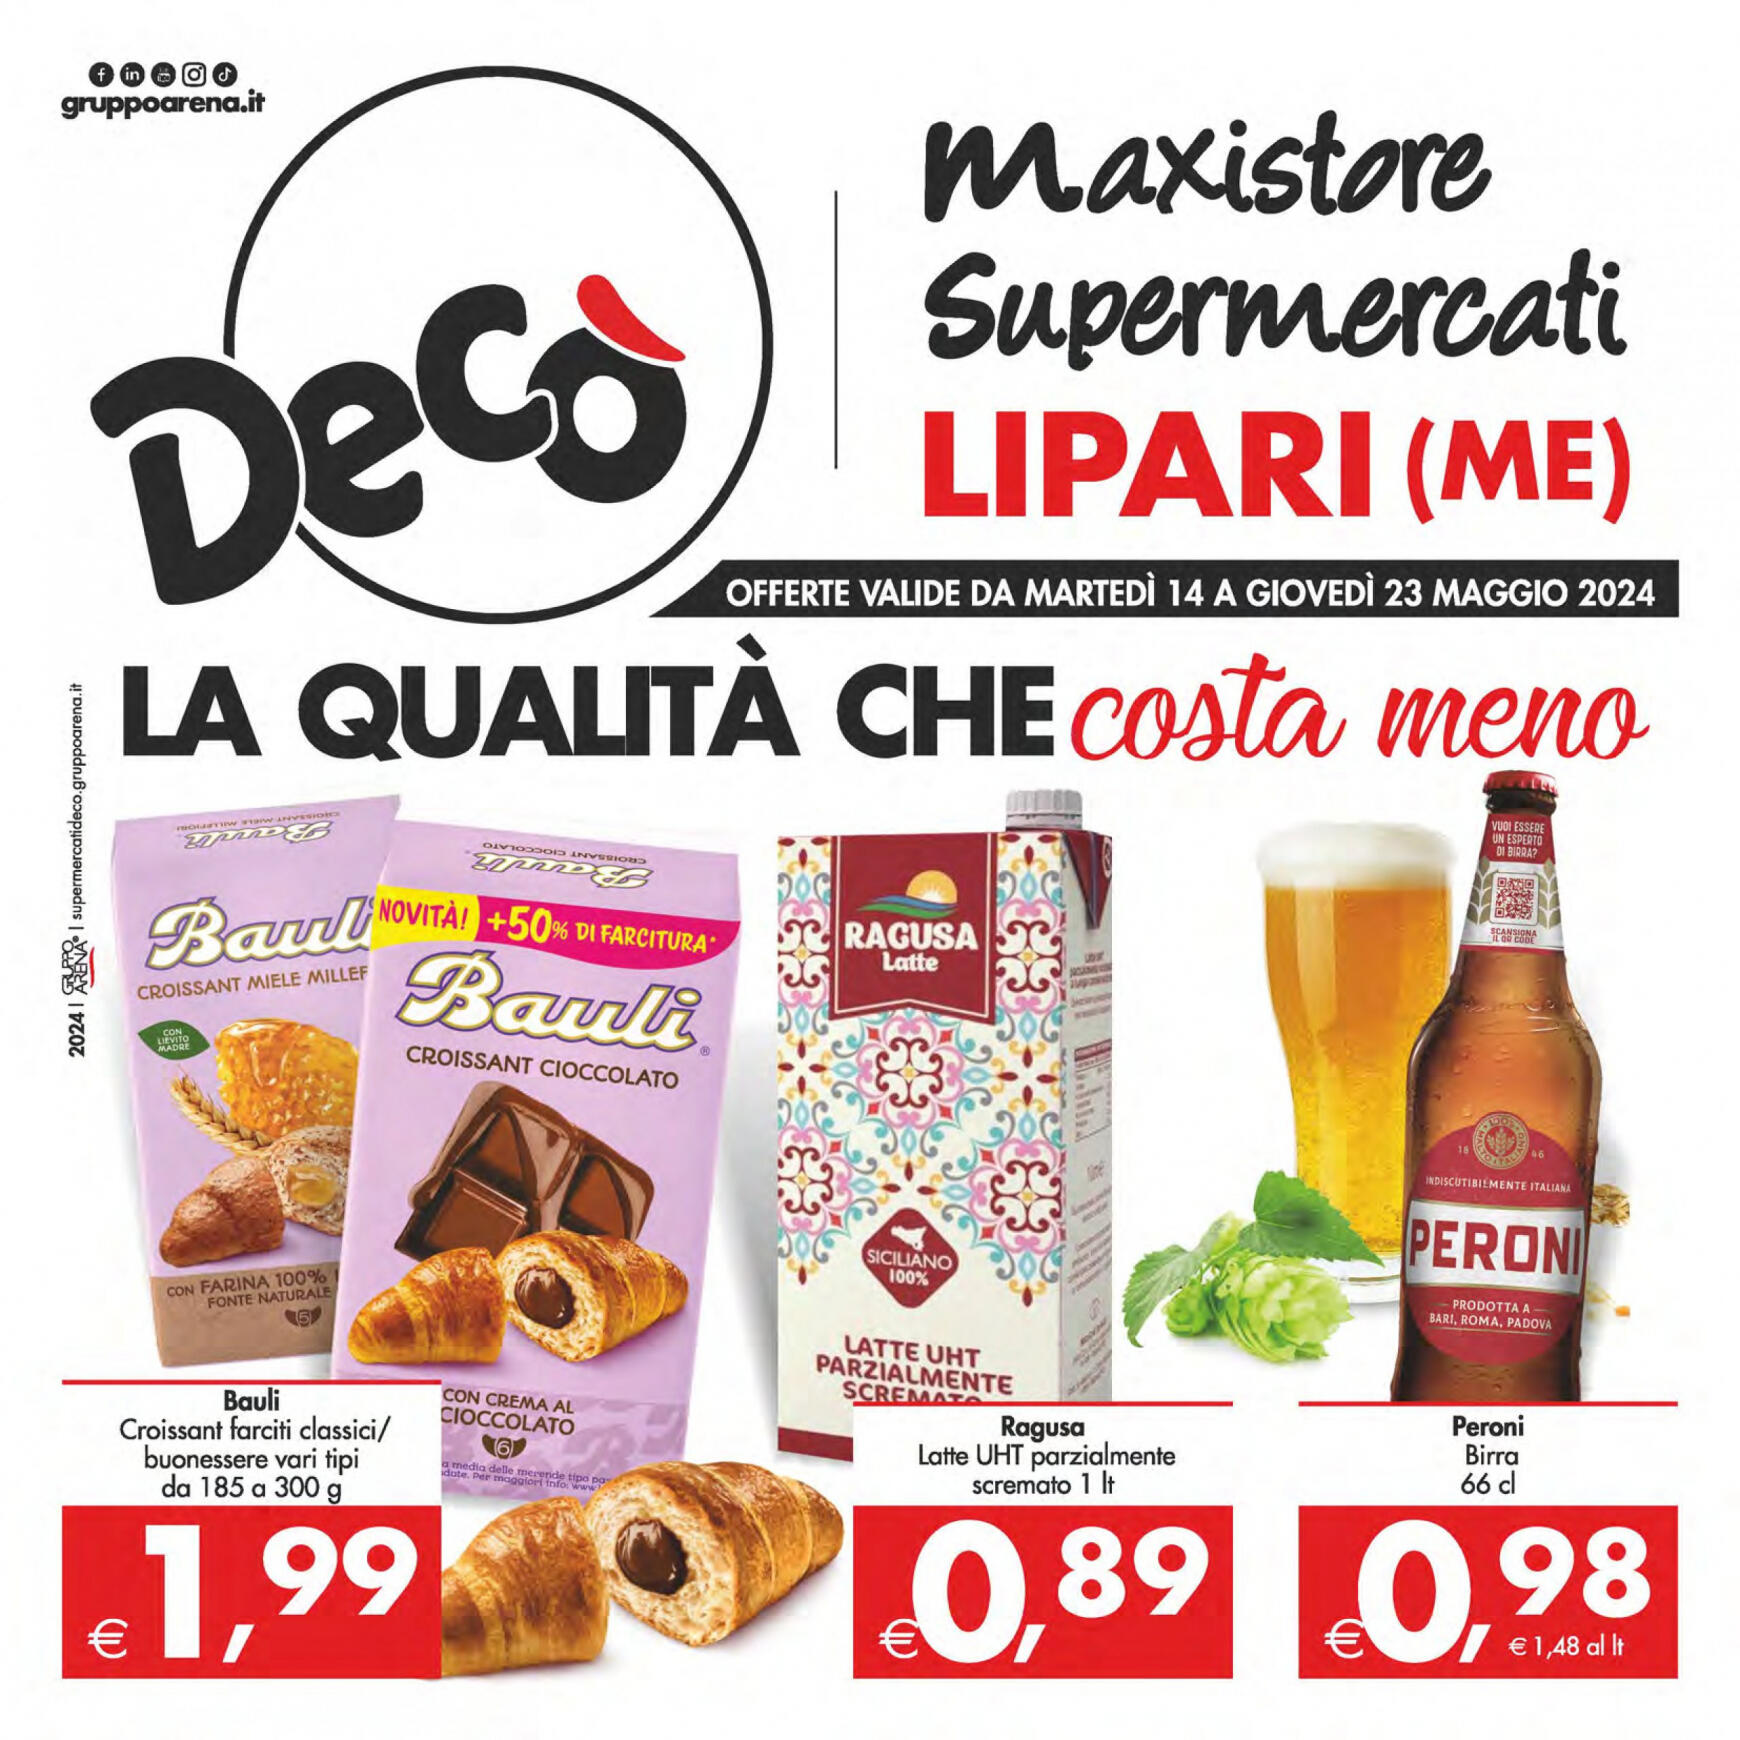 deco - Nuovo volantino Decò - Maxistore/Supermercati/Local Lipari 14.05. - 23.05.